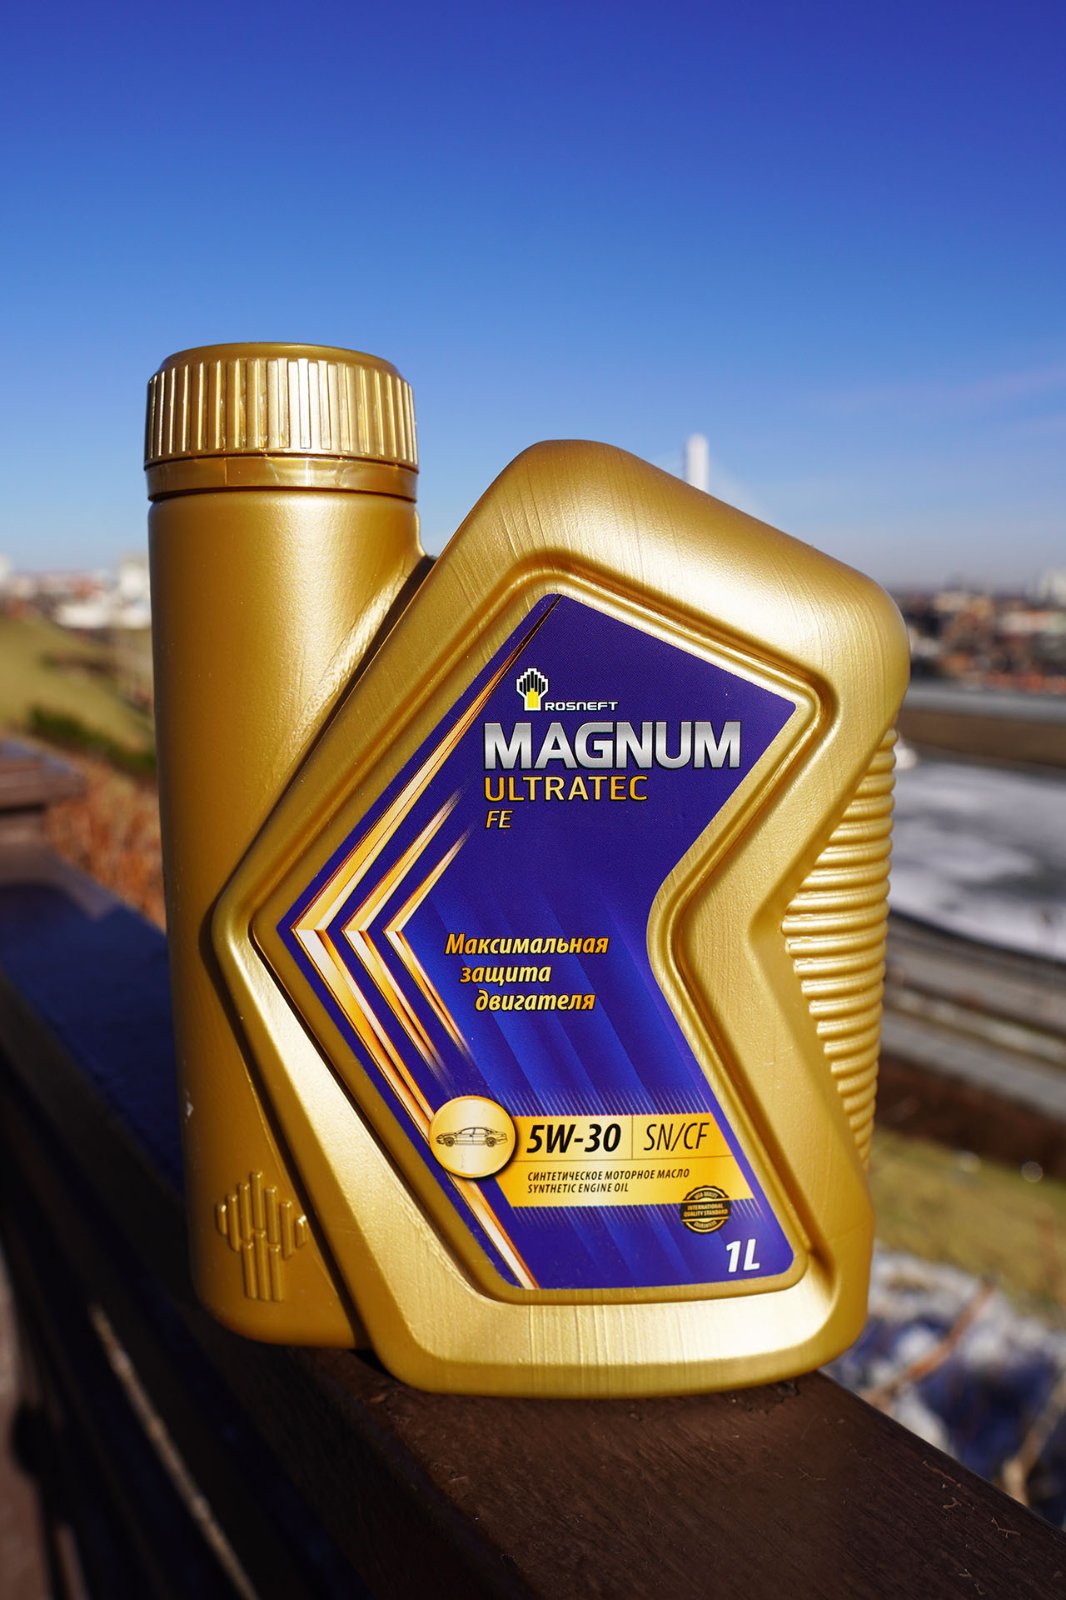  Magnum Ultratec FE 5W-30 свежее - Лабораторные анализы - Свежие .